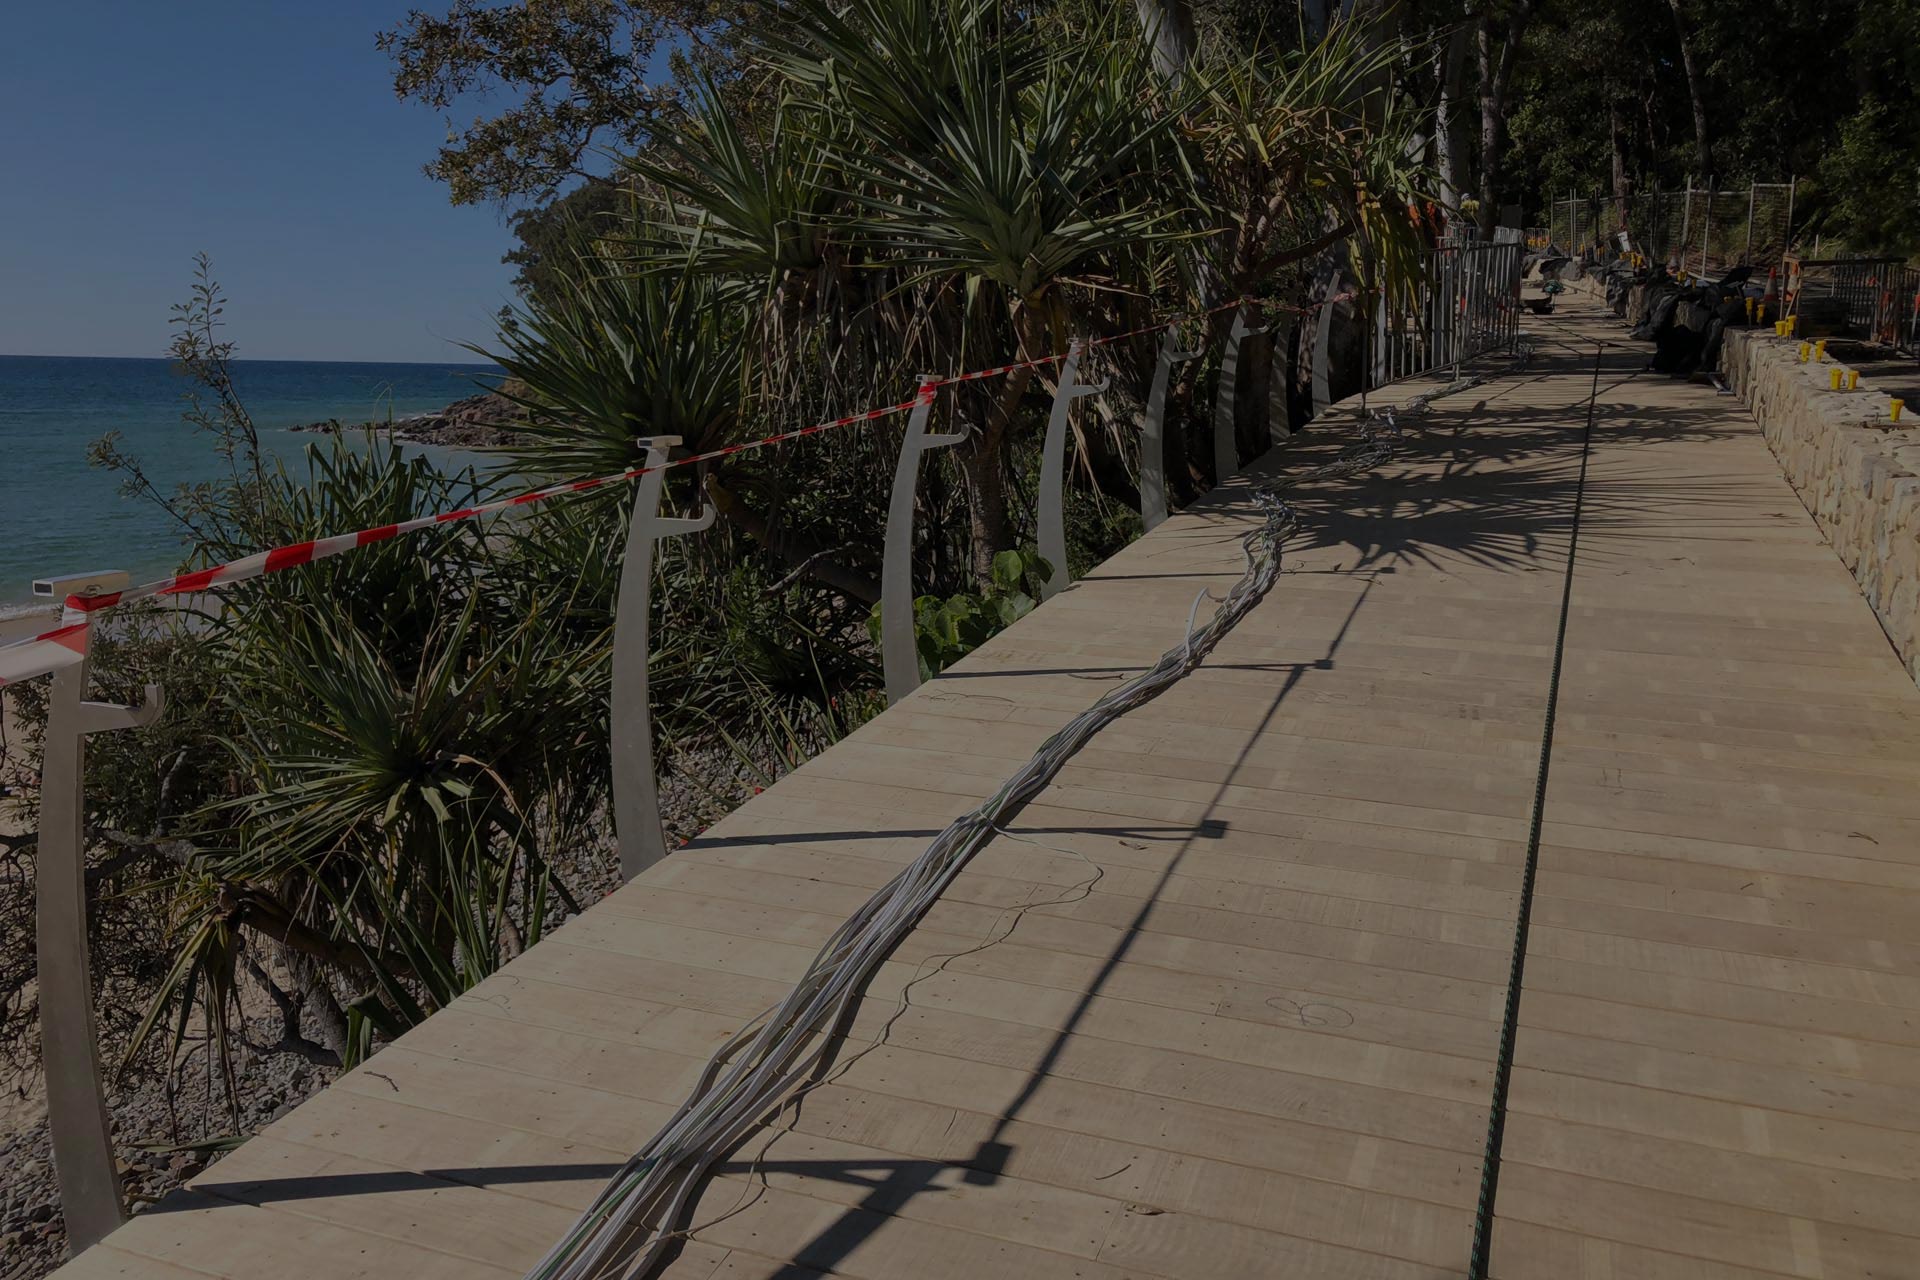 merbau decking beach deck walkway